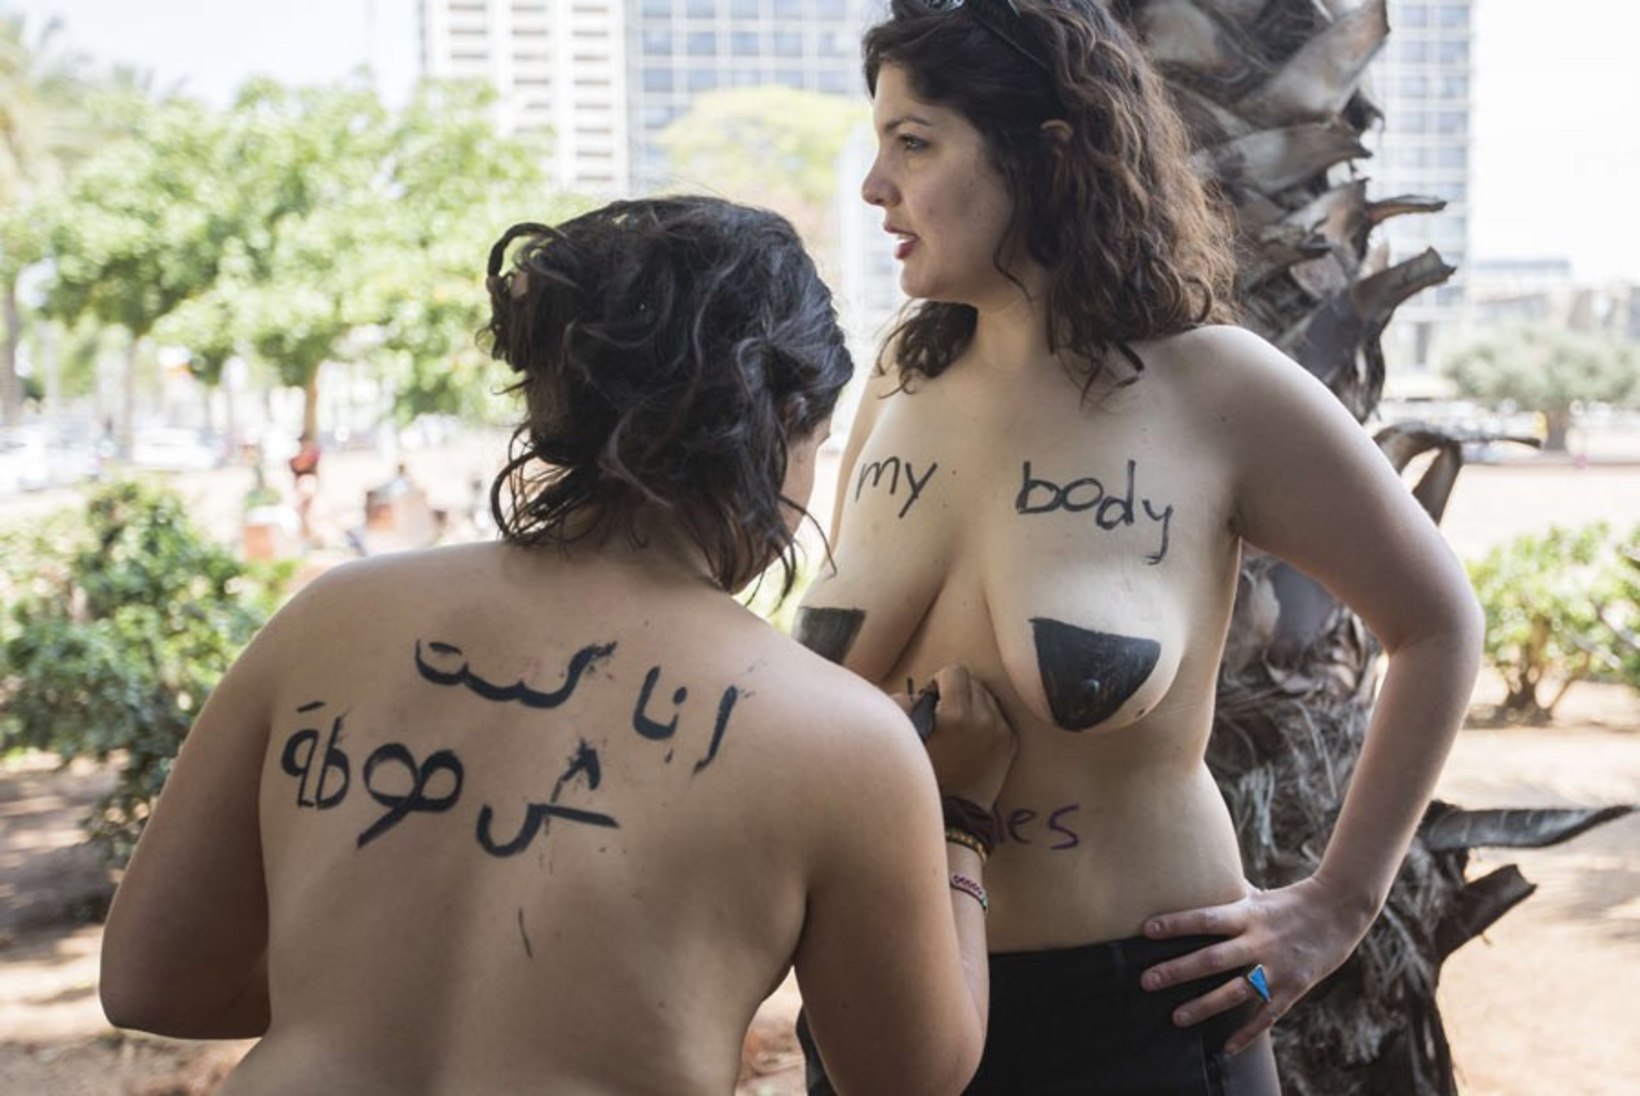 PILTUUDIS: Femeni paljastislased möllavad juba Iisraelis